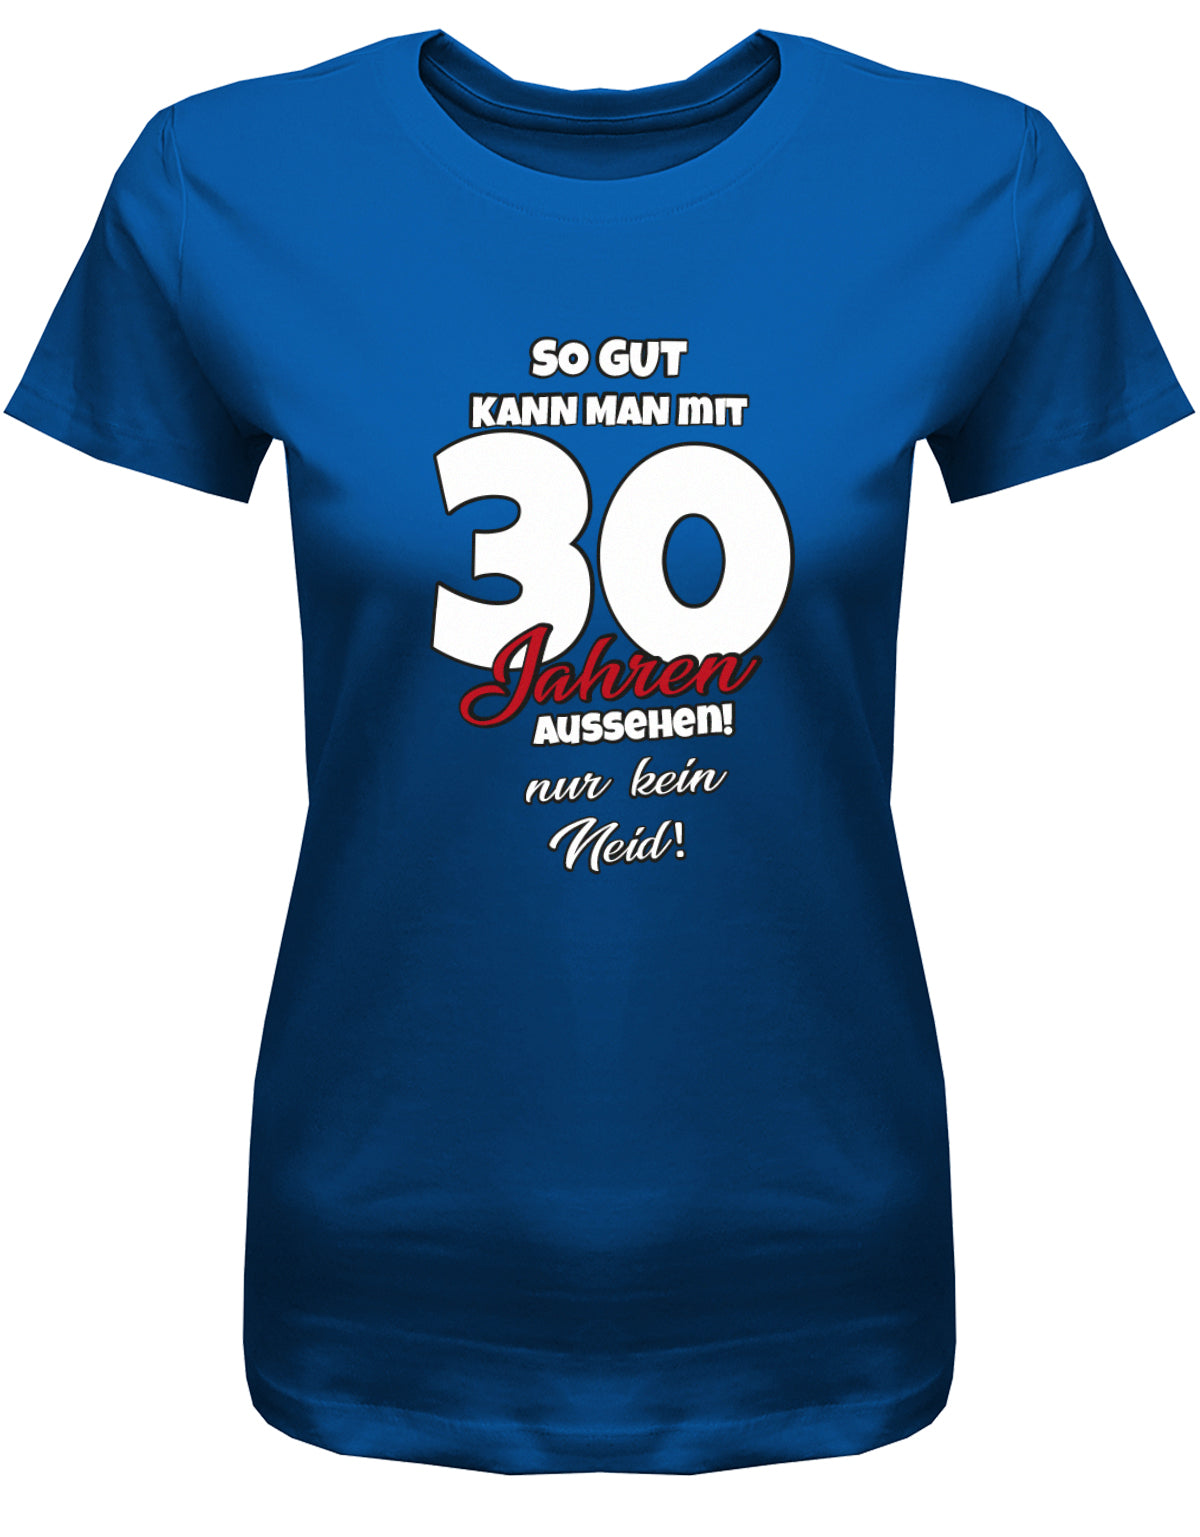 Lustiges T-Shirt zum 30 Geburtstag für die Frau Bedruckt mit So gut kann man mit 30 Jahren aussehen! Nur kein Neid! Royalblau